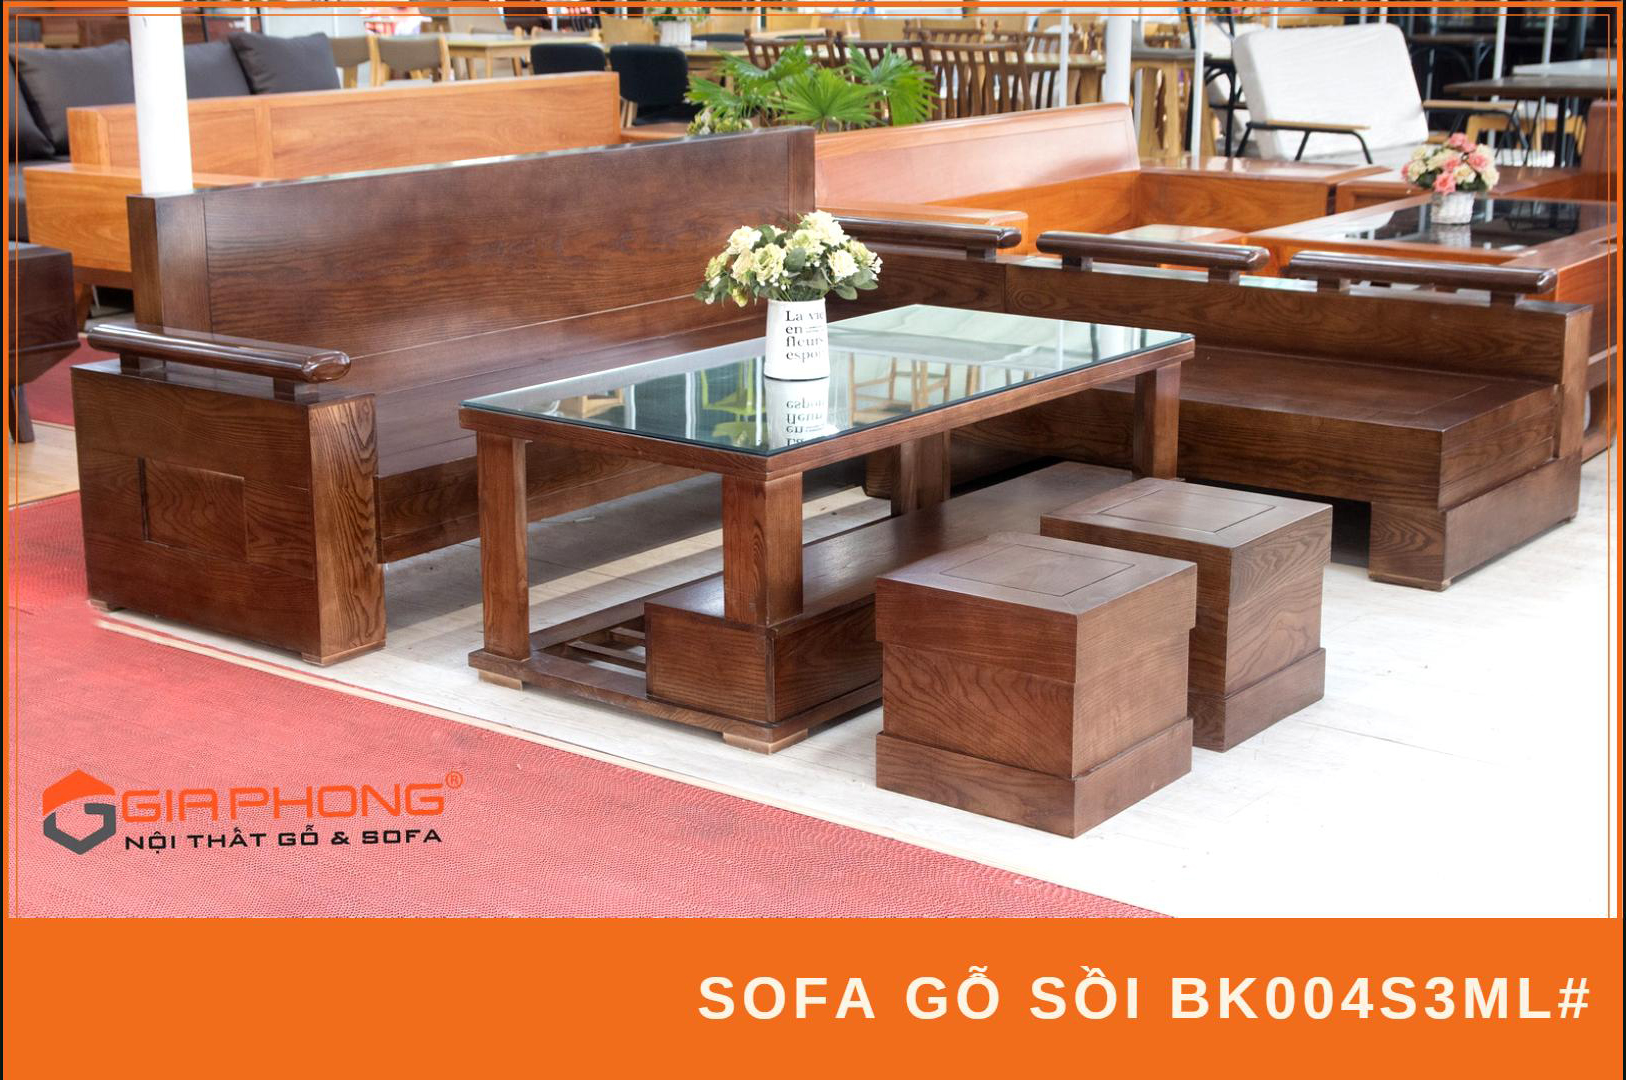 Top 6 bộ bàn ghế gỗ phòng khách nhỏ gọn sẽ trở thành một lựa chọn hoàn hảo cho căn phòng của bạn. Với thiết kế đẹp và chất lượng cao, bạn có thể tận dụng không gian phòng khách của mình một cách tối đa. Sản phẩm sẽ khiến căn phòng của bạn trở nên sang trọng và đẳng cấp hơn. Hãy lựa chọn sản phẩm của chúng tôi và trải nghiệm sự tiện lợi và chất lượng cao.